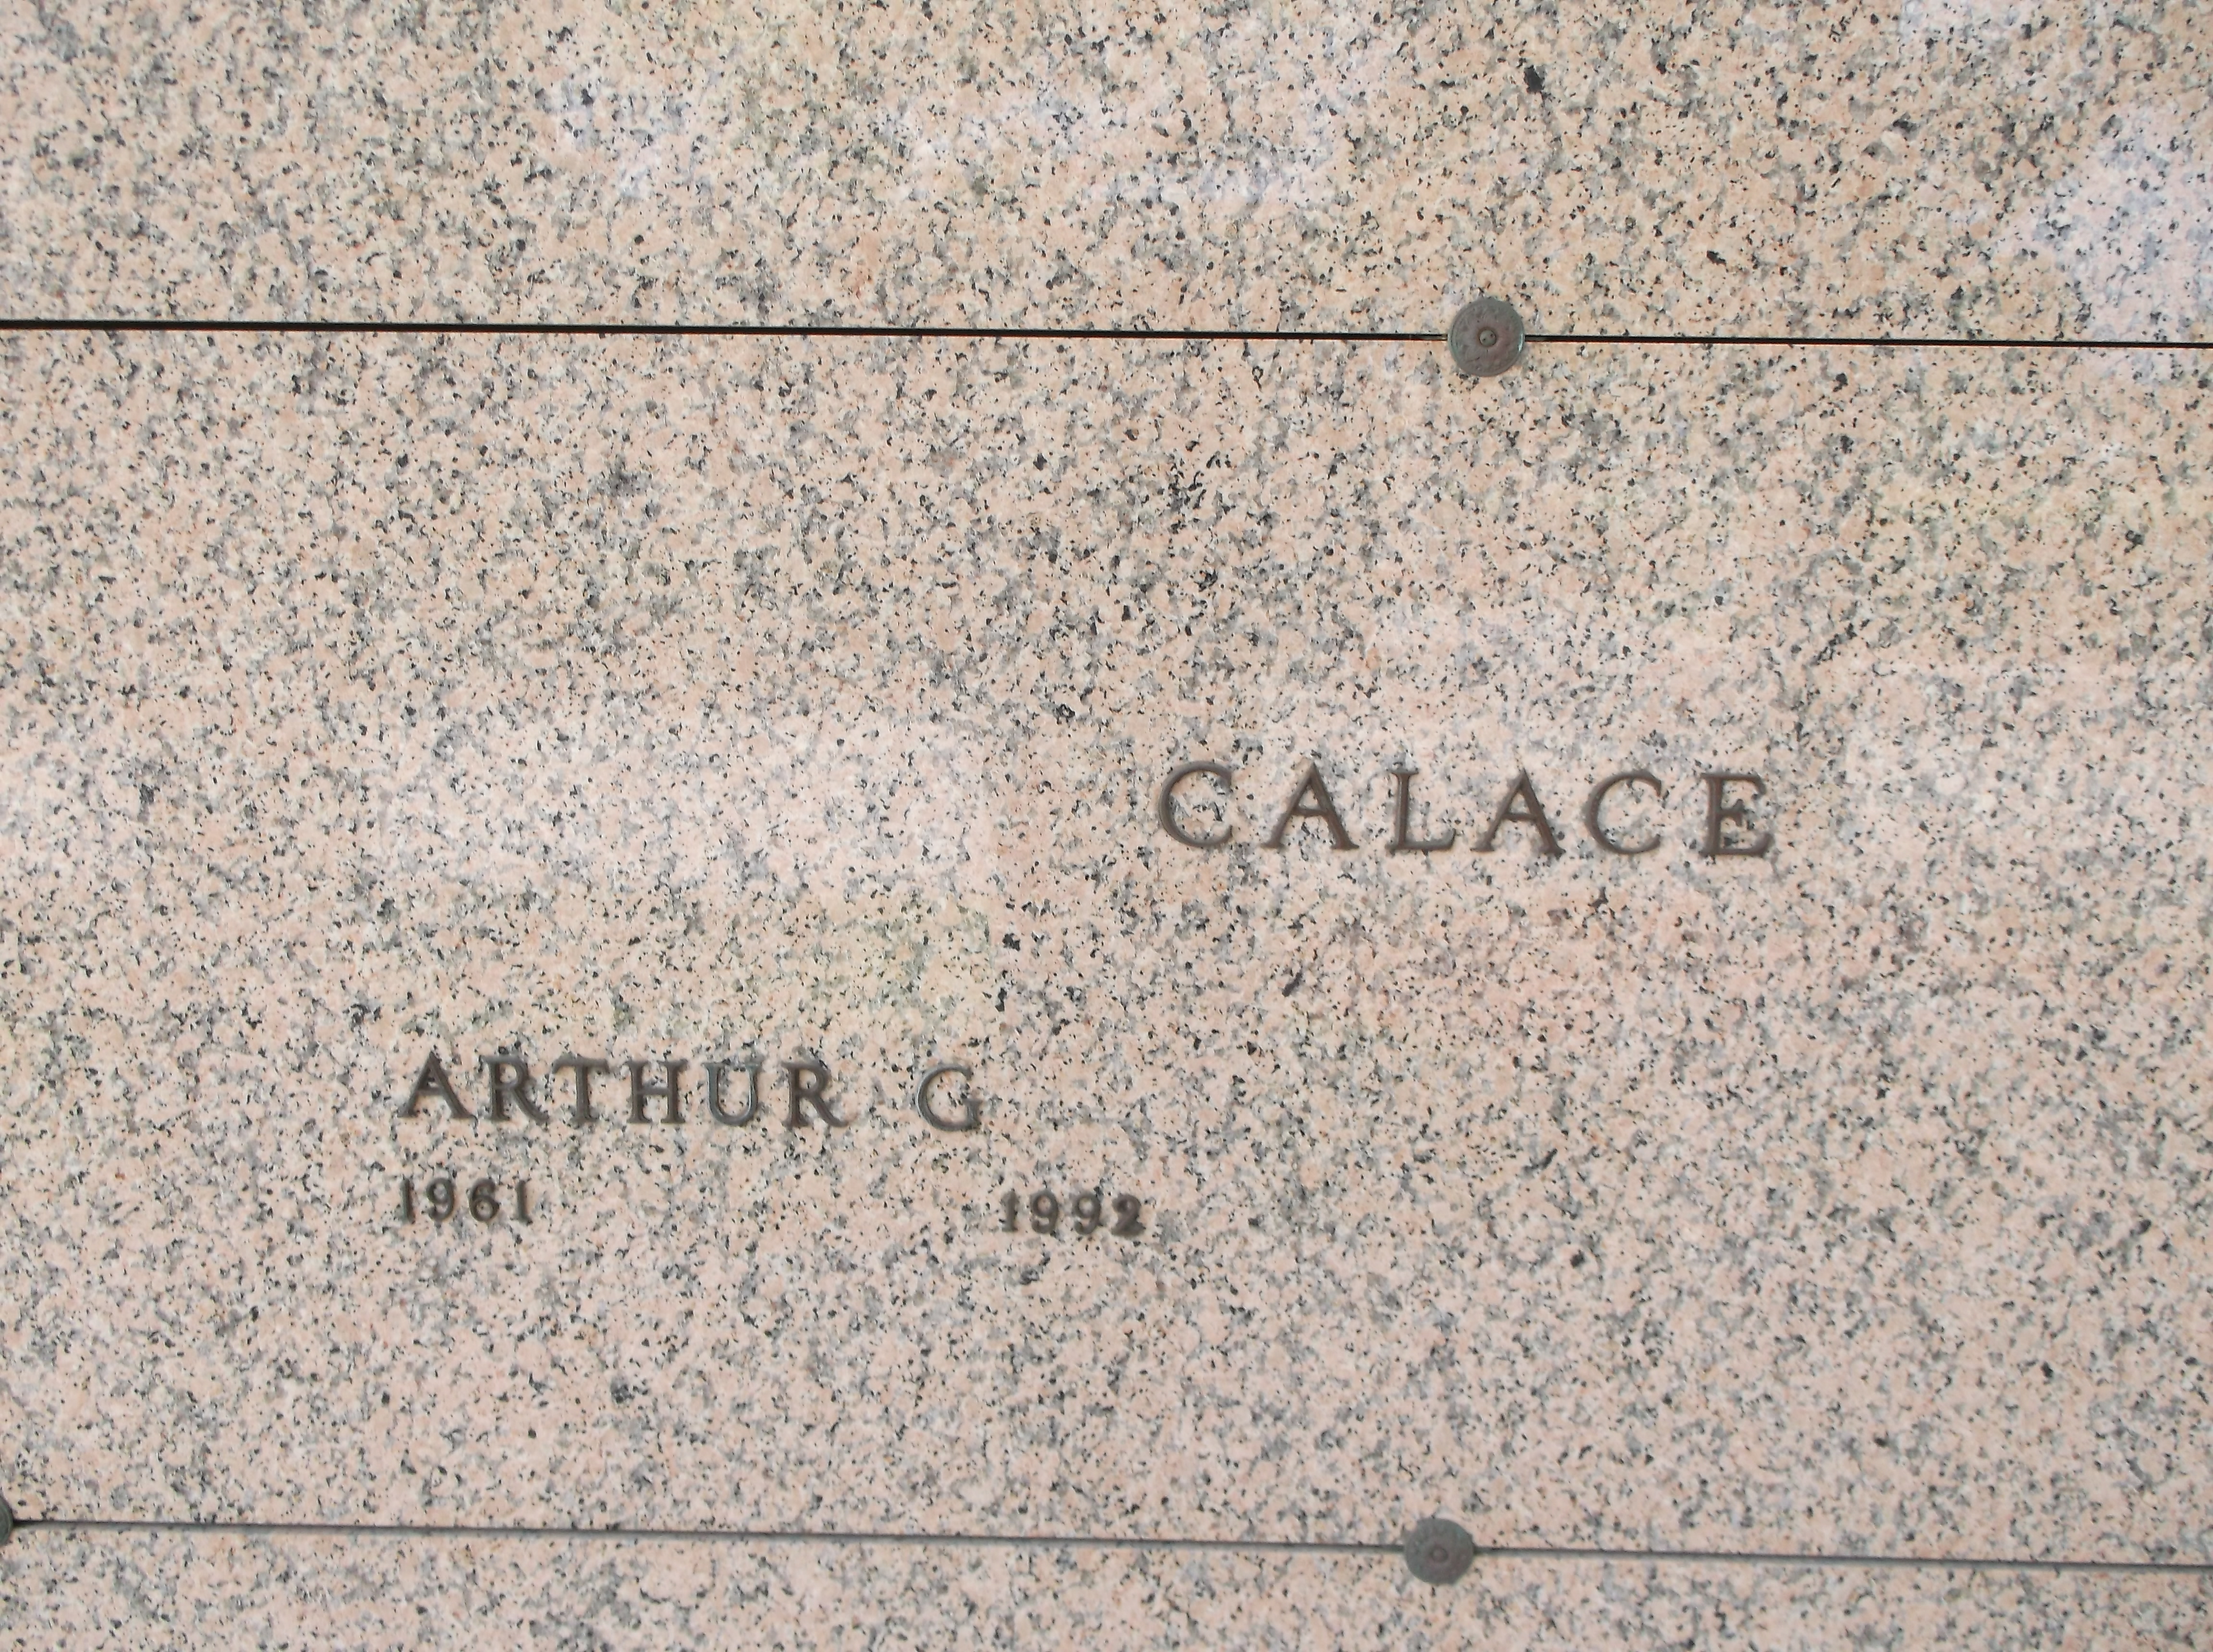 Arthur G Calace